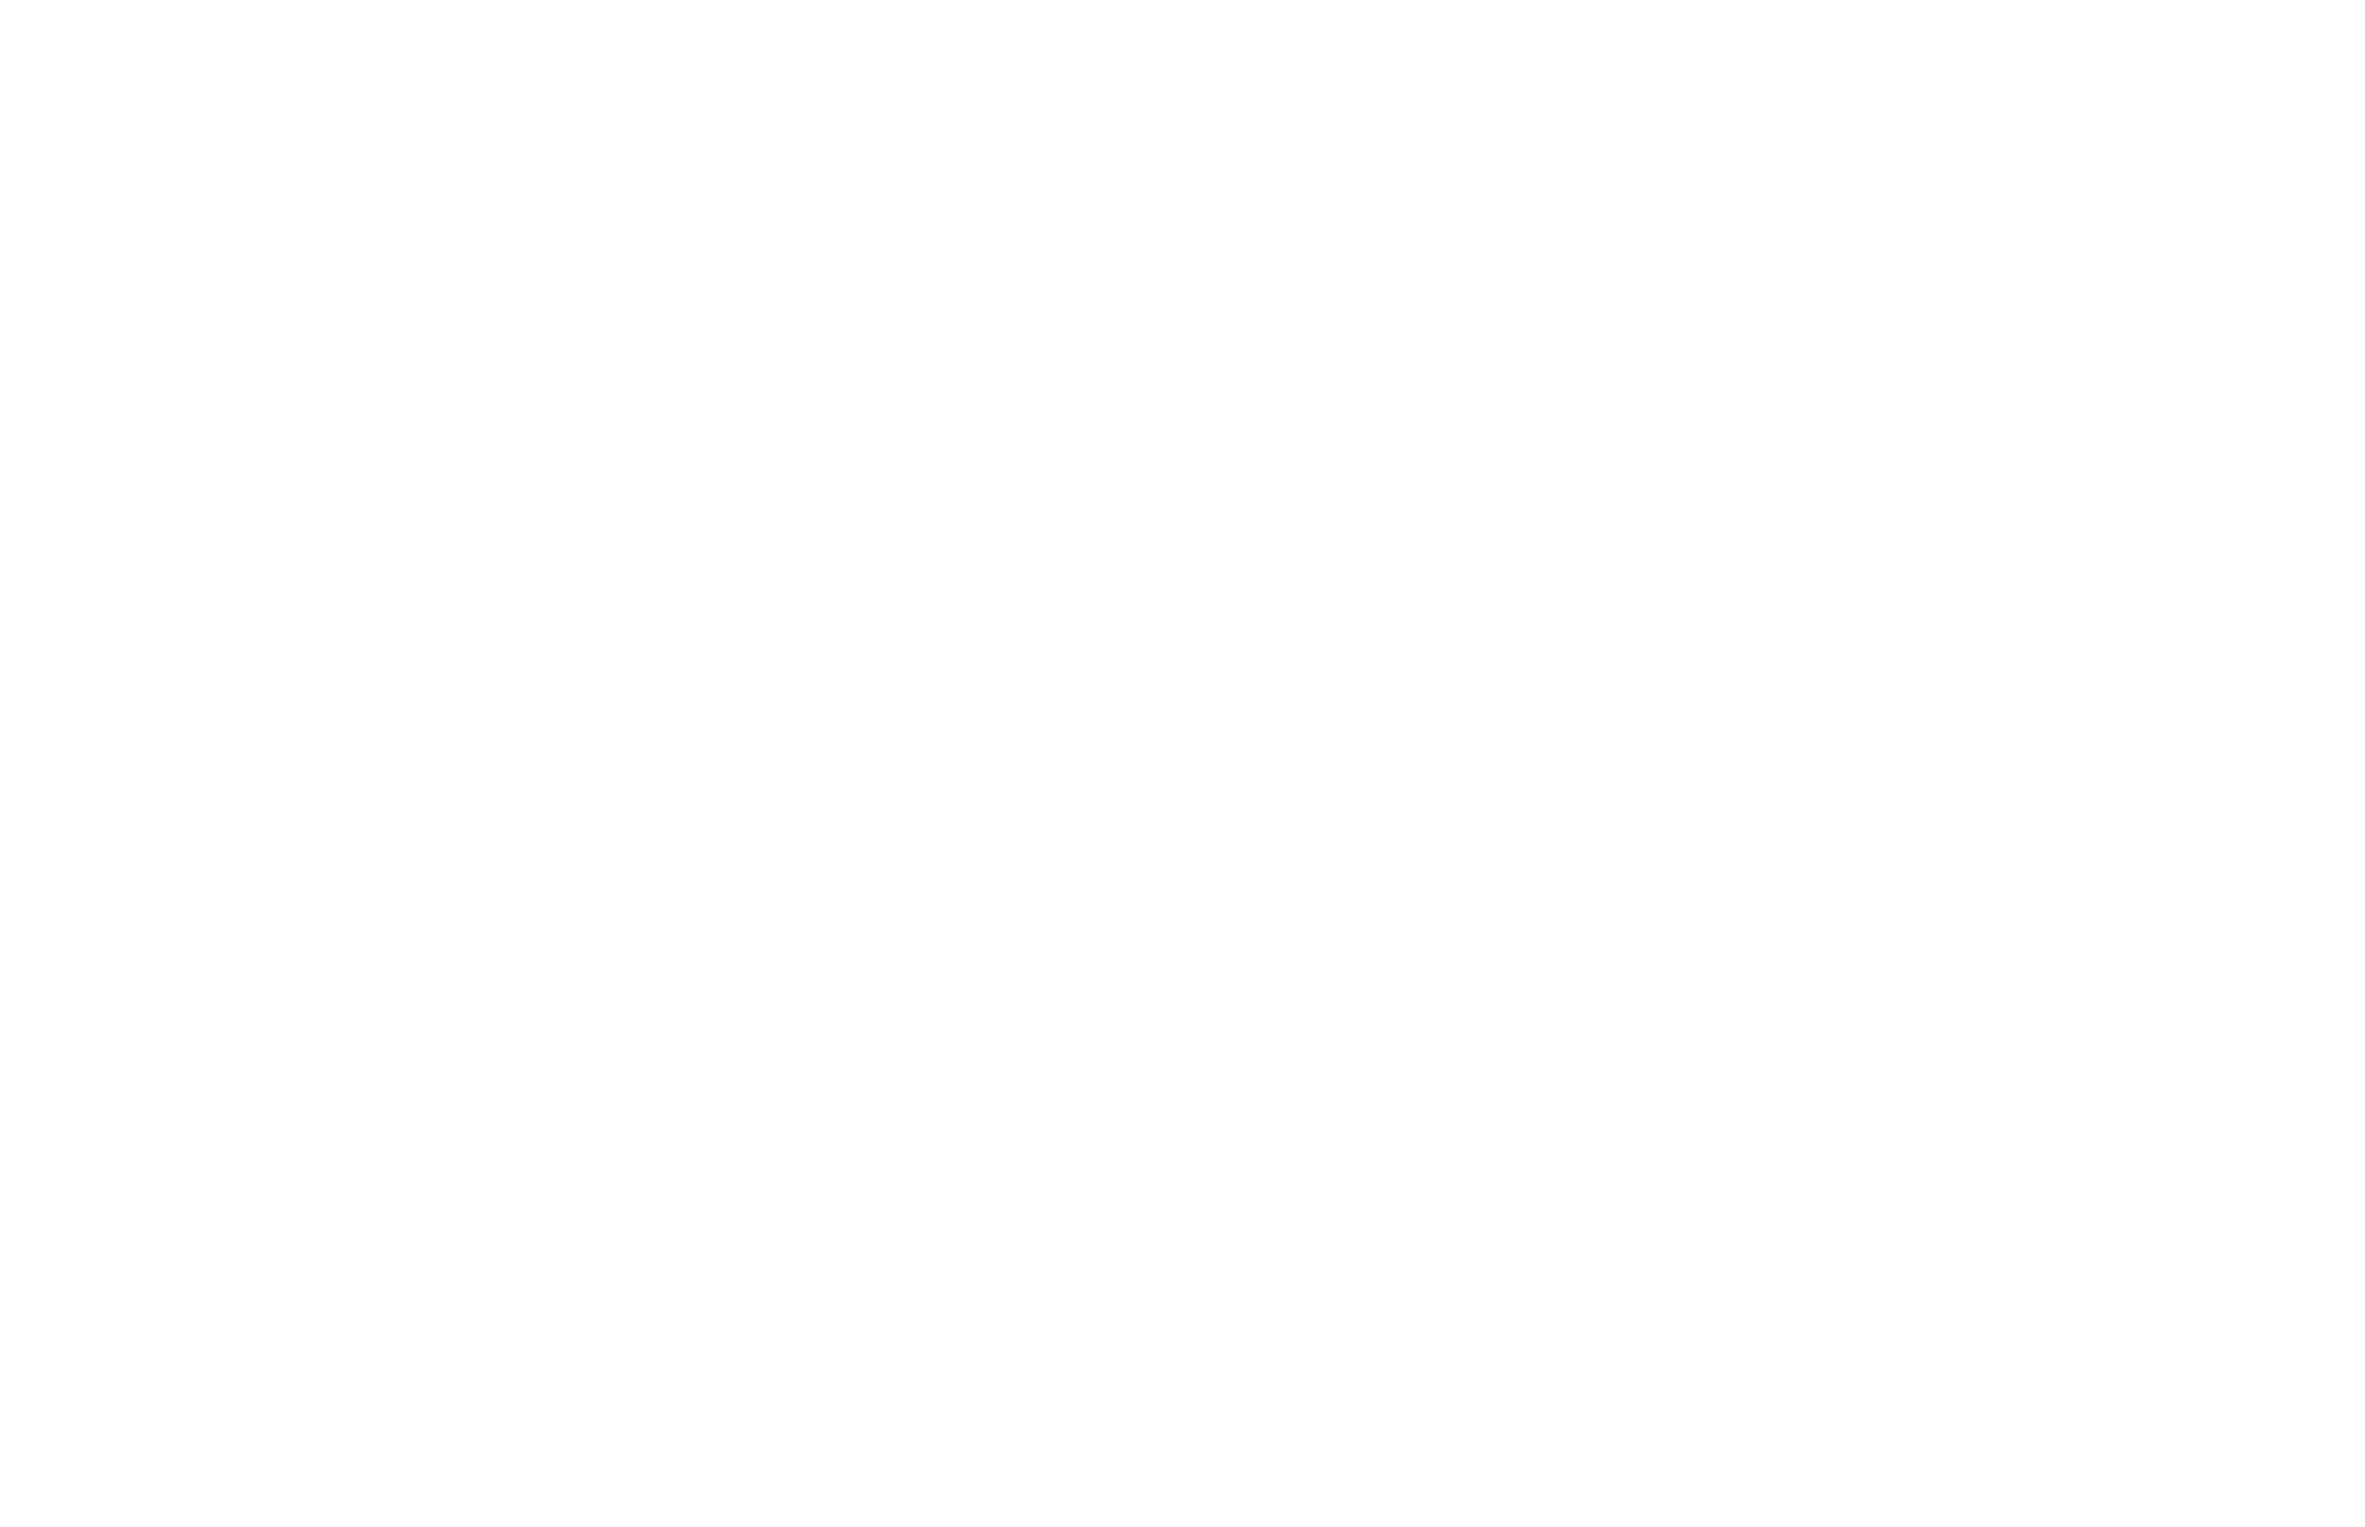 New East logo